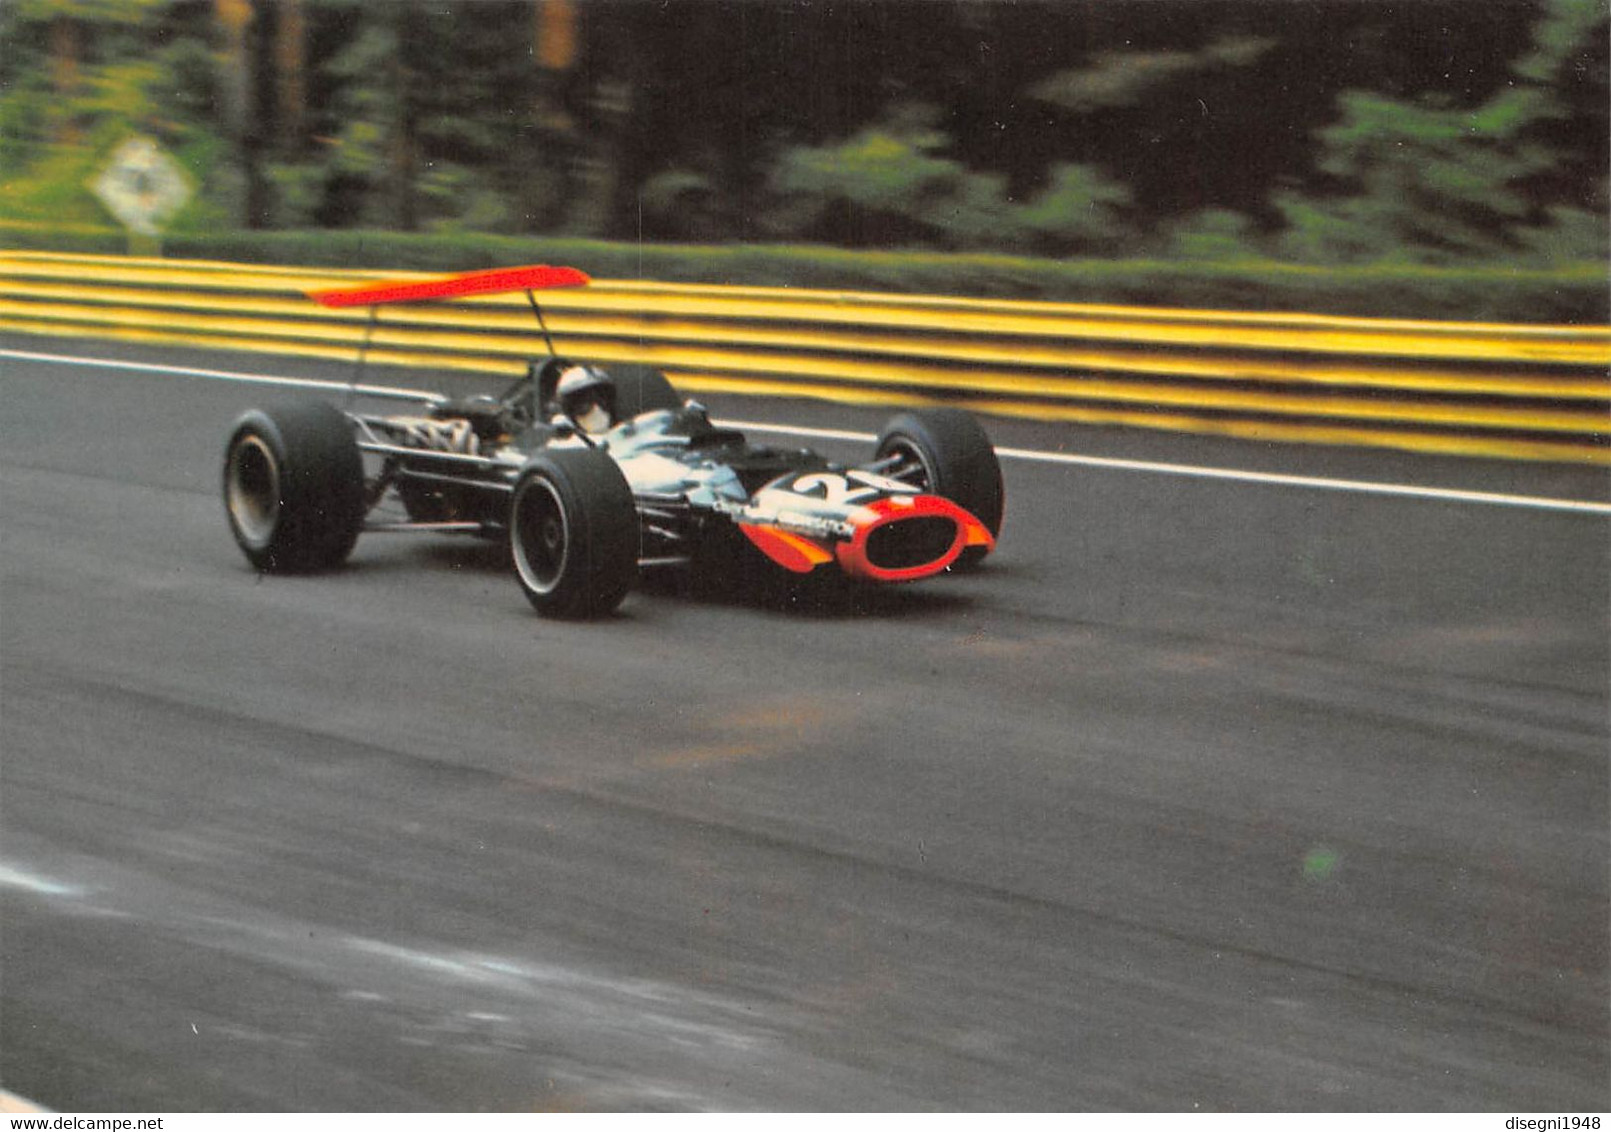 011004 " PEDRO RODRIGUEZ - BRM F. 1 1968 - GRAN PREMIO D'ITALIA 1968 - MONZA" CARTOLINA  ORIG. NON SPED. - Autosport - F1